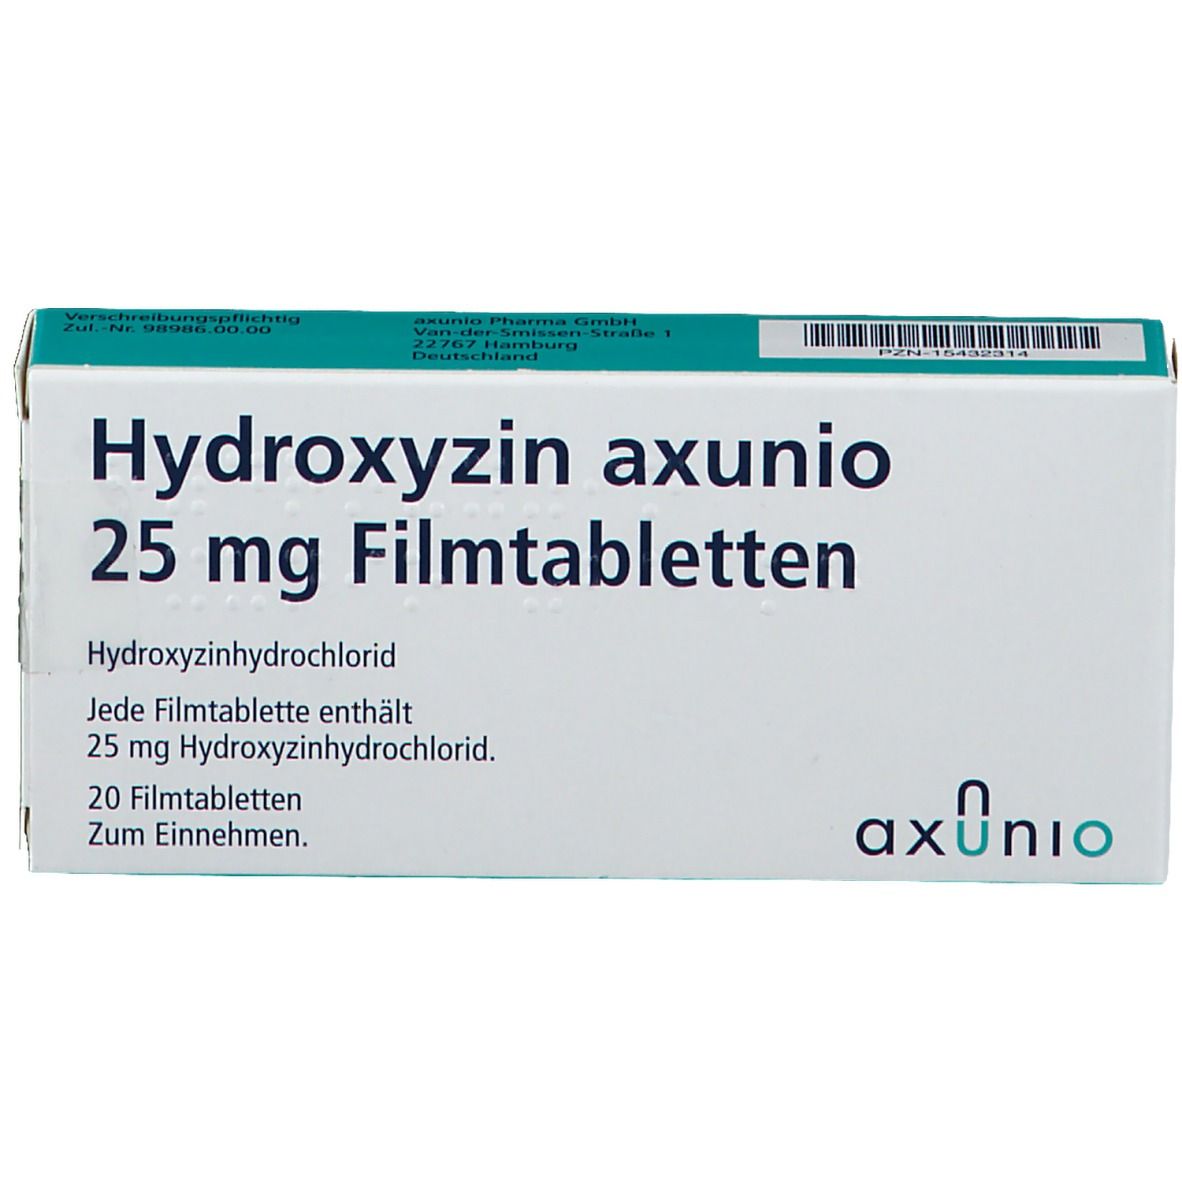 Hydroxyzin axunio 25 mg